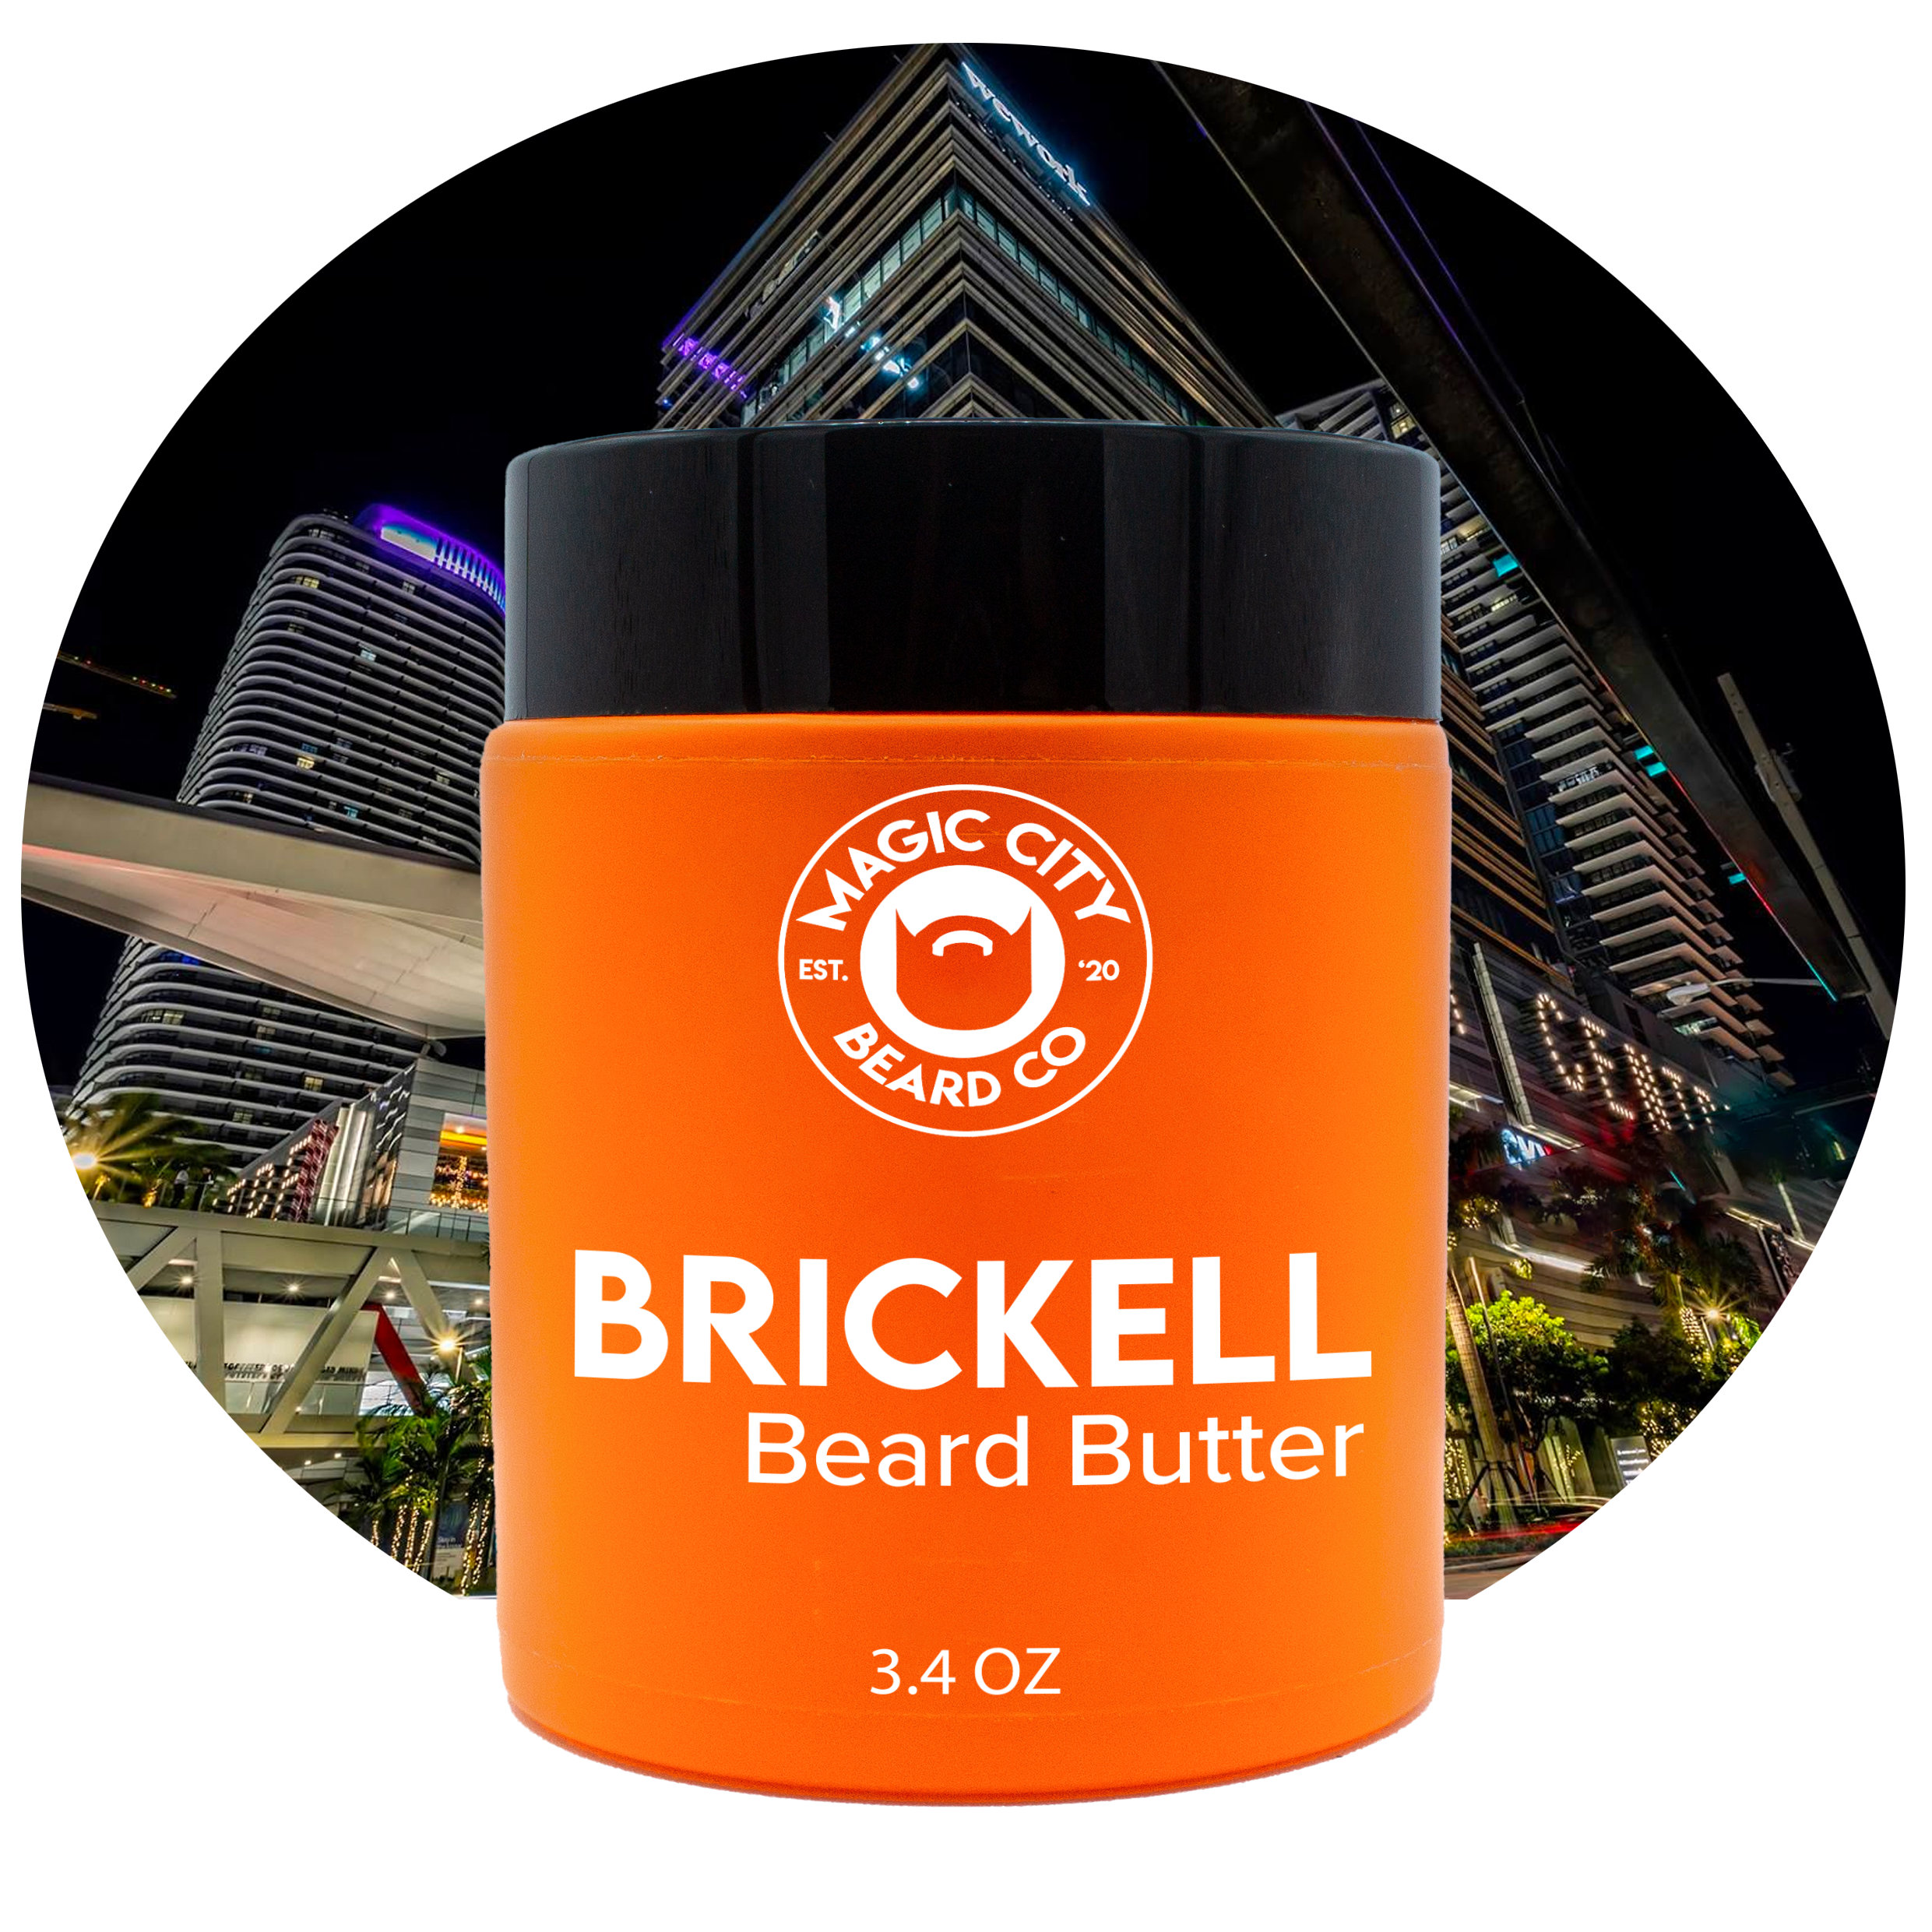 Brickell Beard Butter